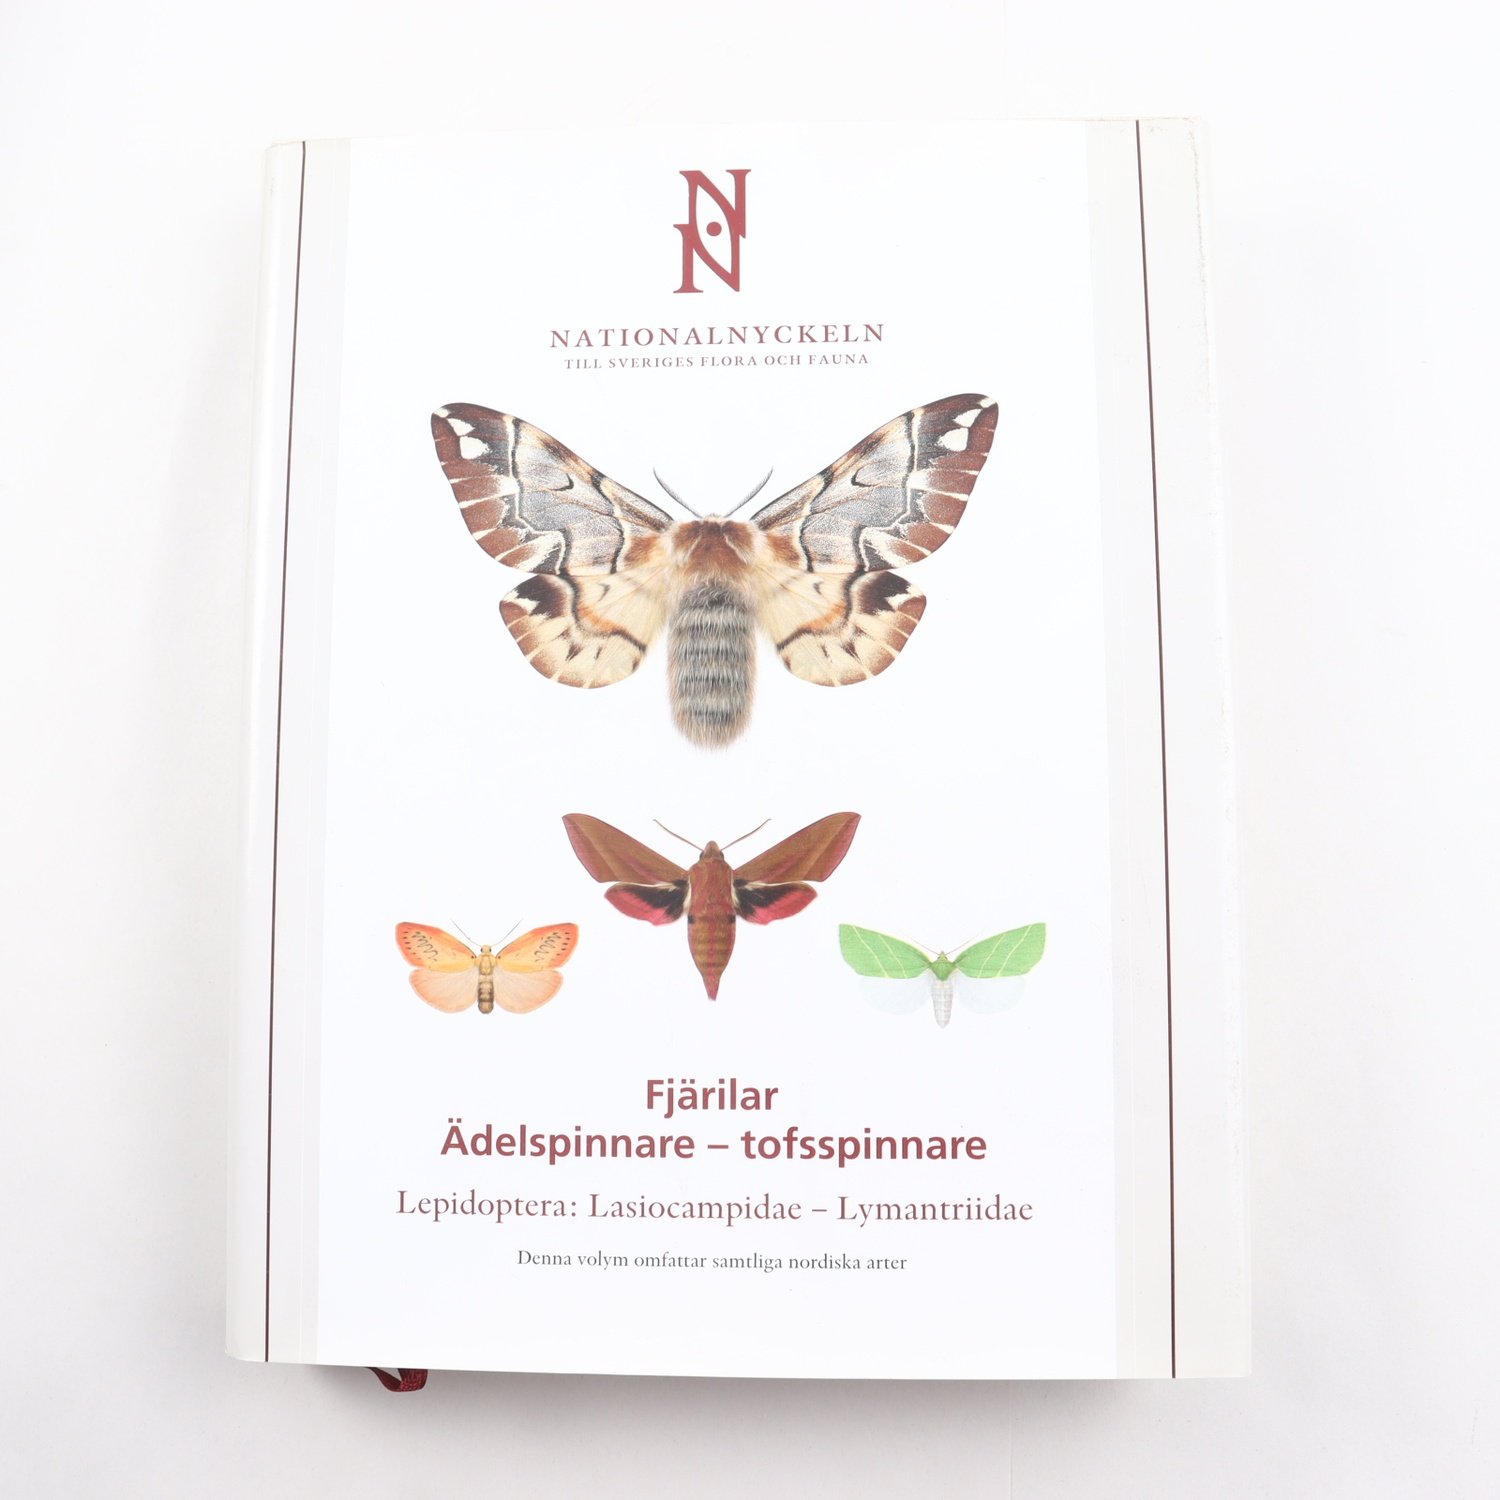 Nationalnyckeln till Sveriges Flora och Fauna, Fjärilar,